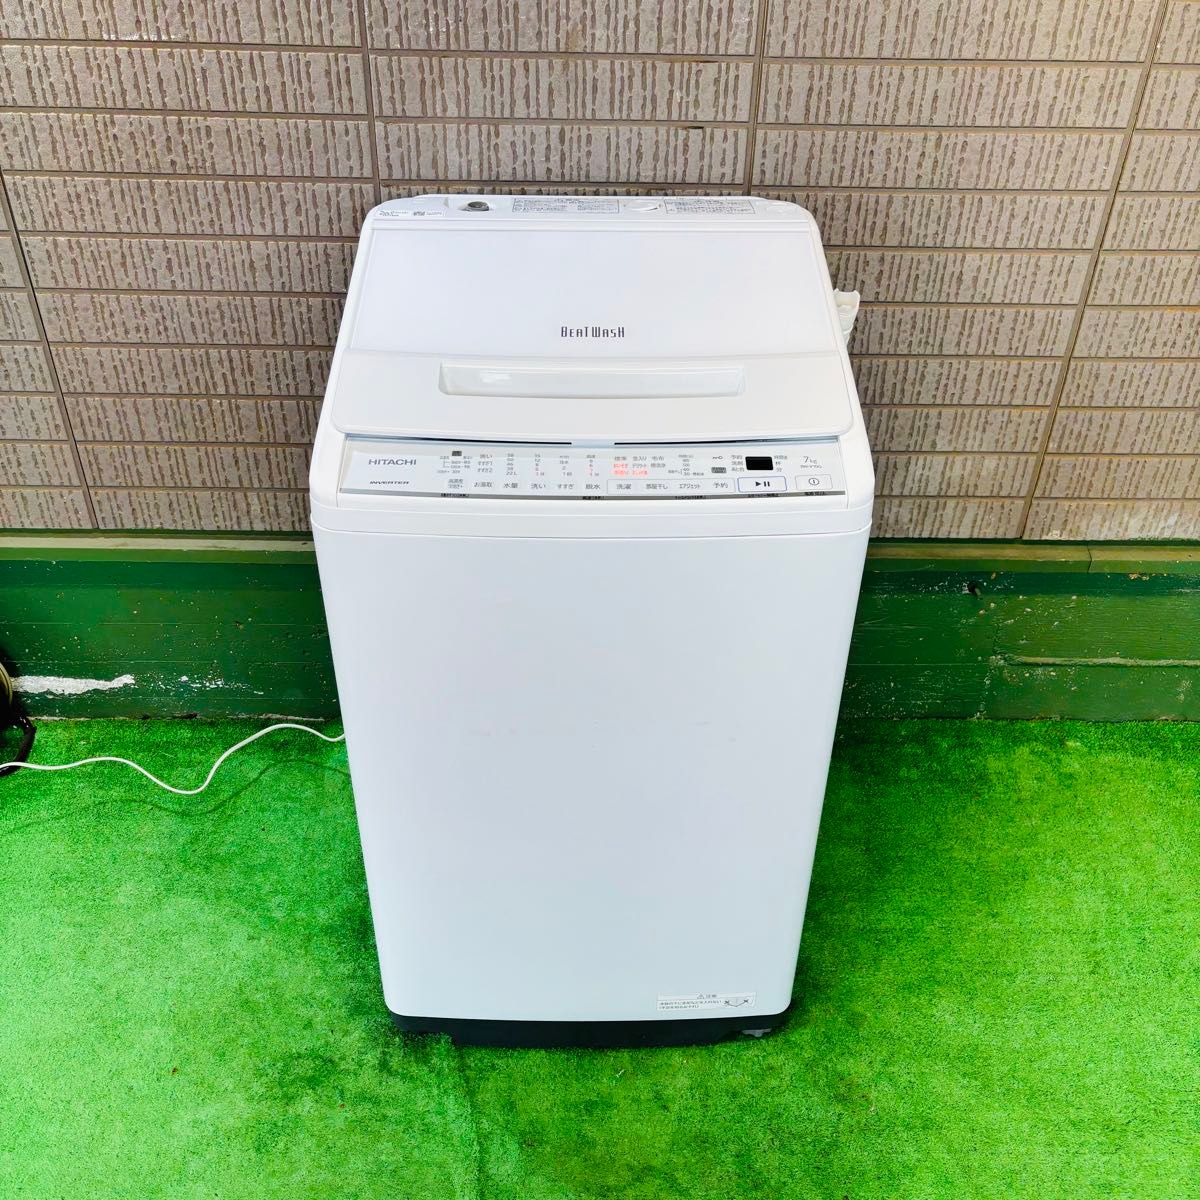 21年製 7.0kg 洗濯機 おしゃれガラストップ 日立【地域限定配送無料】